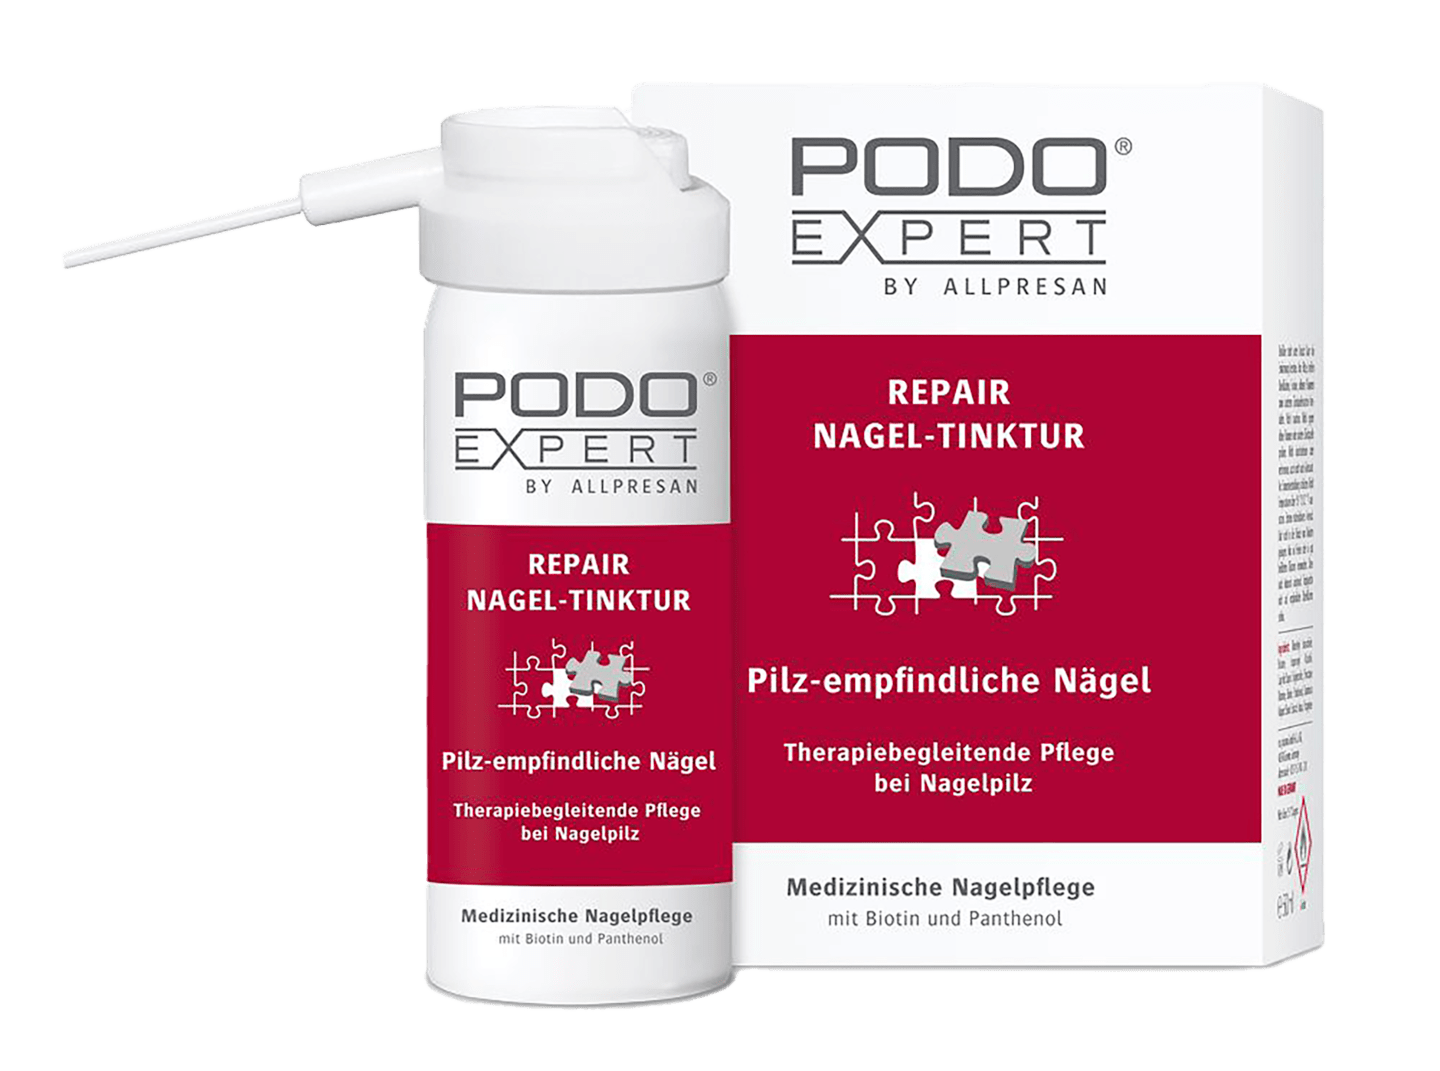 Podoexpert by Allpresan - Repair Nagel-Tinktur Therapiebegleitende Pflege bei Nagelpilz, 50 ml